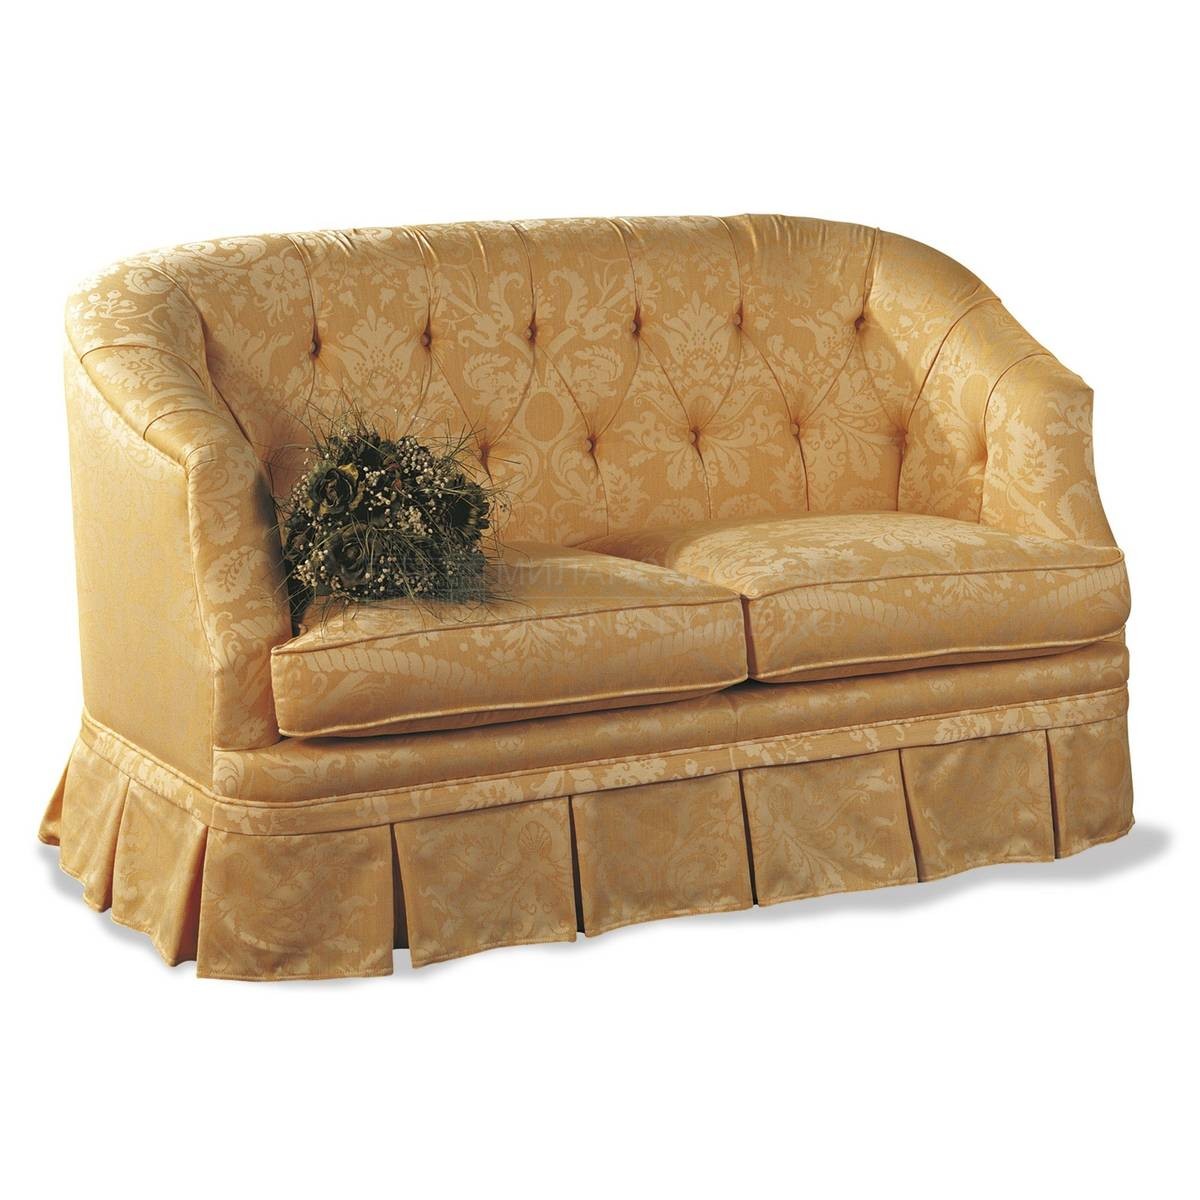 Прямой диван The Upholstery/D334 из Италии фабрики FRANCESCO MOLON